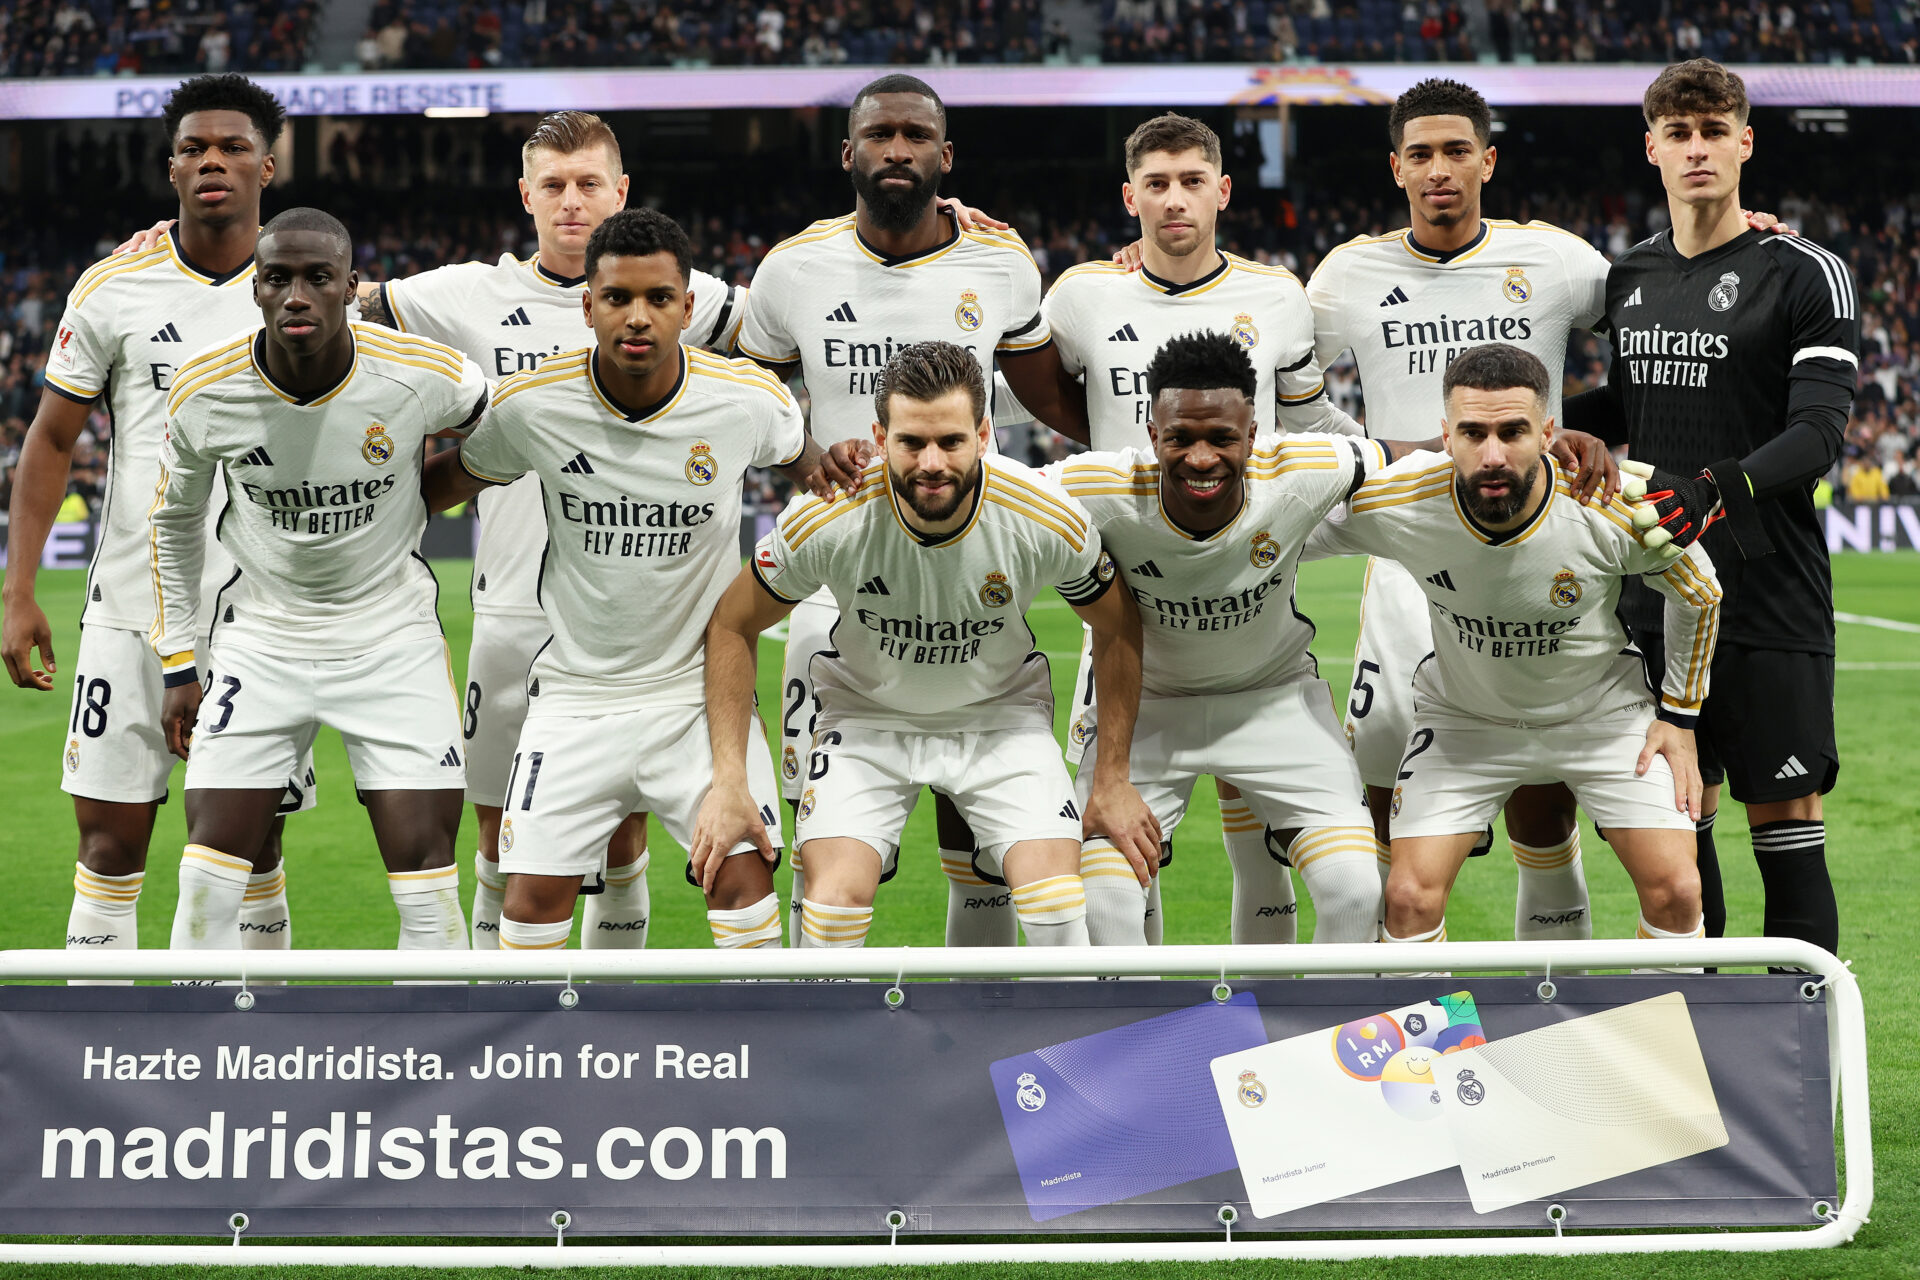 El Real Madrid tiene un nuevo patrocinador... en su camiseta.